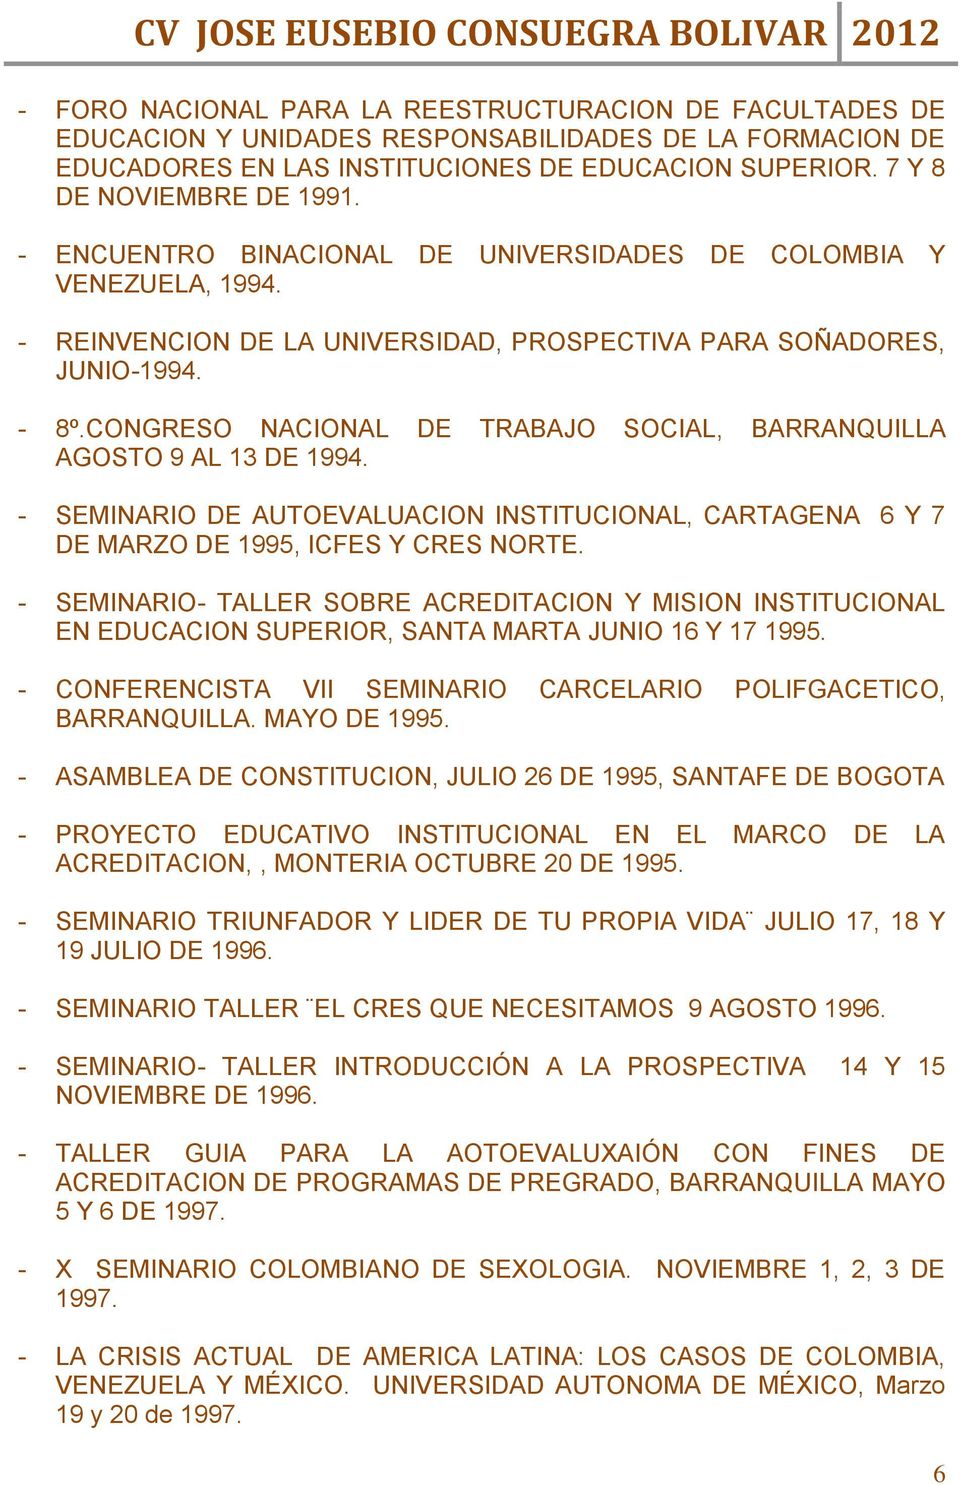 CONGRESO NACIONAL DE TRABAJO SOCIAL, BARRANQUILLA AGOSTO 9 AL 13 DE 1994. - SEMINARIO DE AUTOEVALUACION INSTITUCIONAL, CARTAGENA 6 Y 7 DE MARZO DE 1995, ICFES Y CRES NORTE.